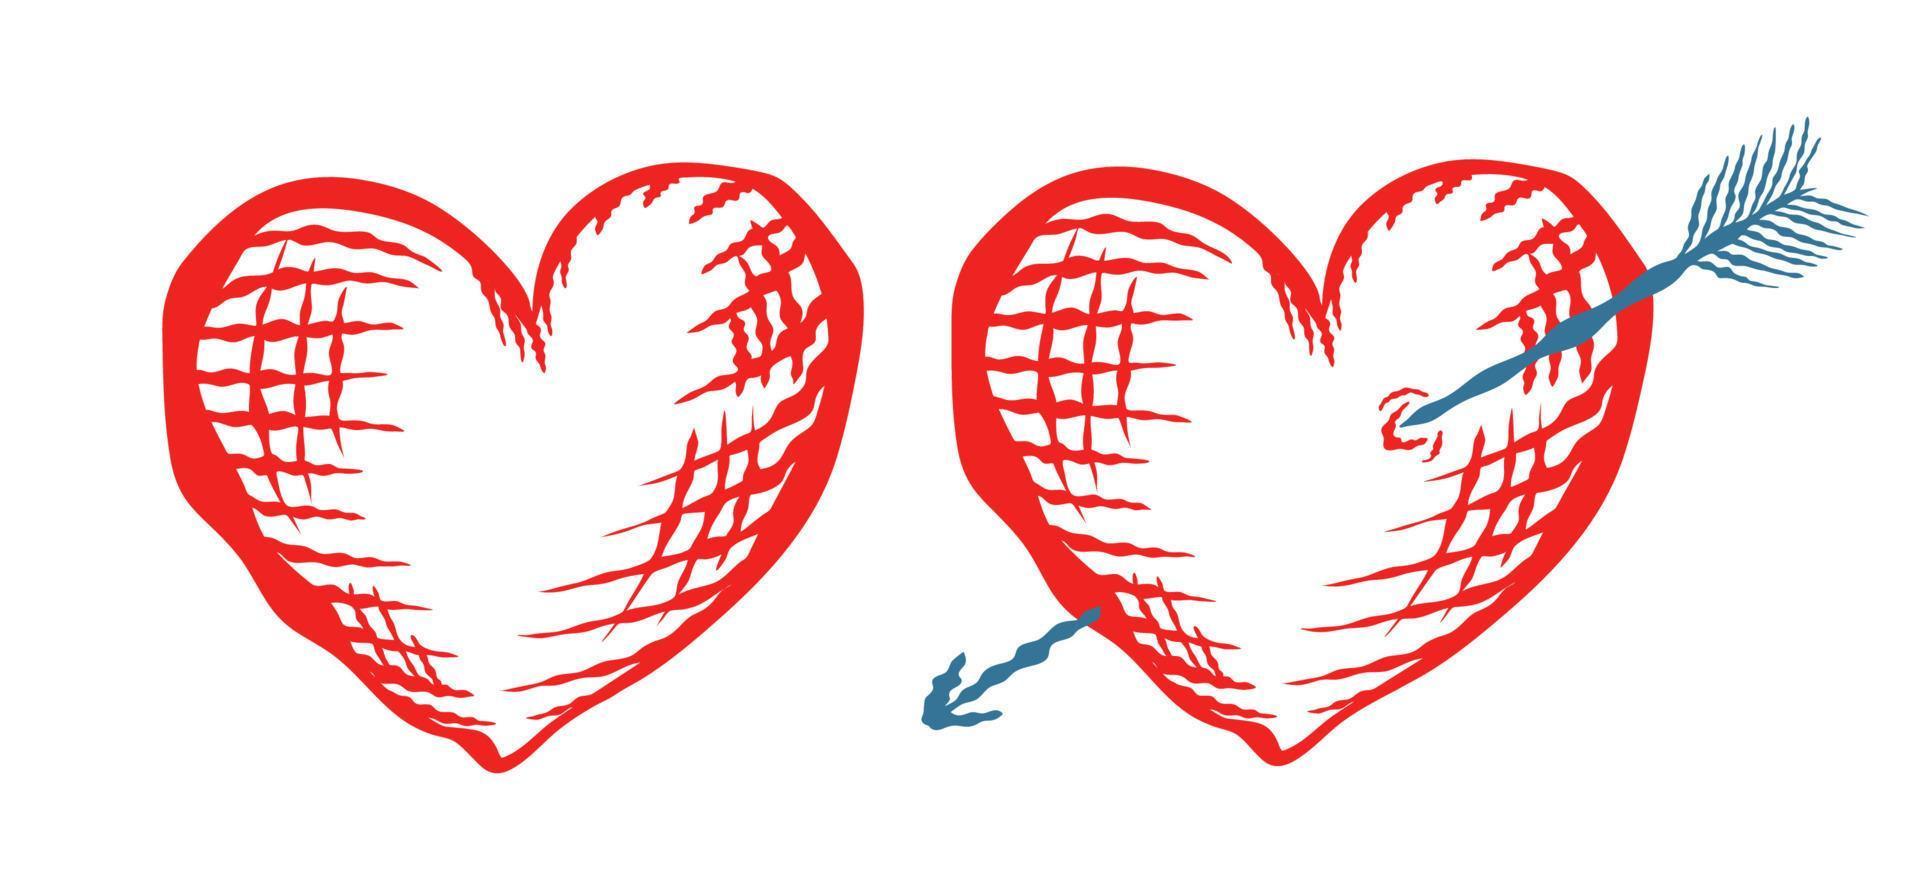 vektor ikoner av röda hjärtan för alla hjärtans dag i hand ritstil. vektor illustrationer av rött hjärta med pil.